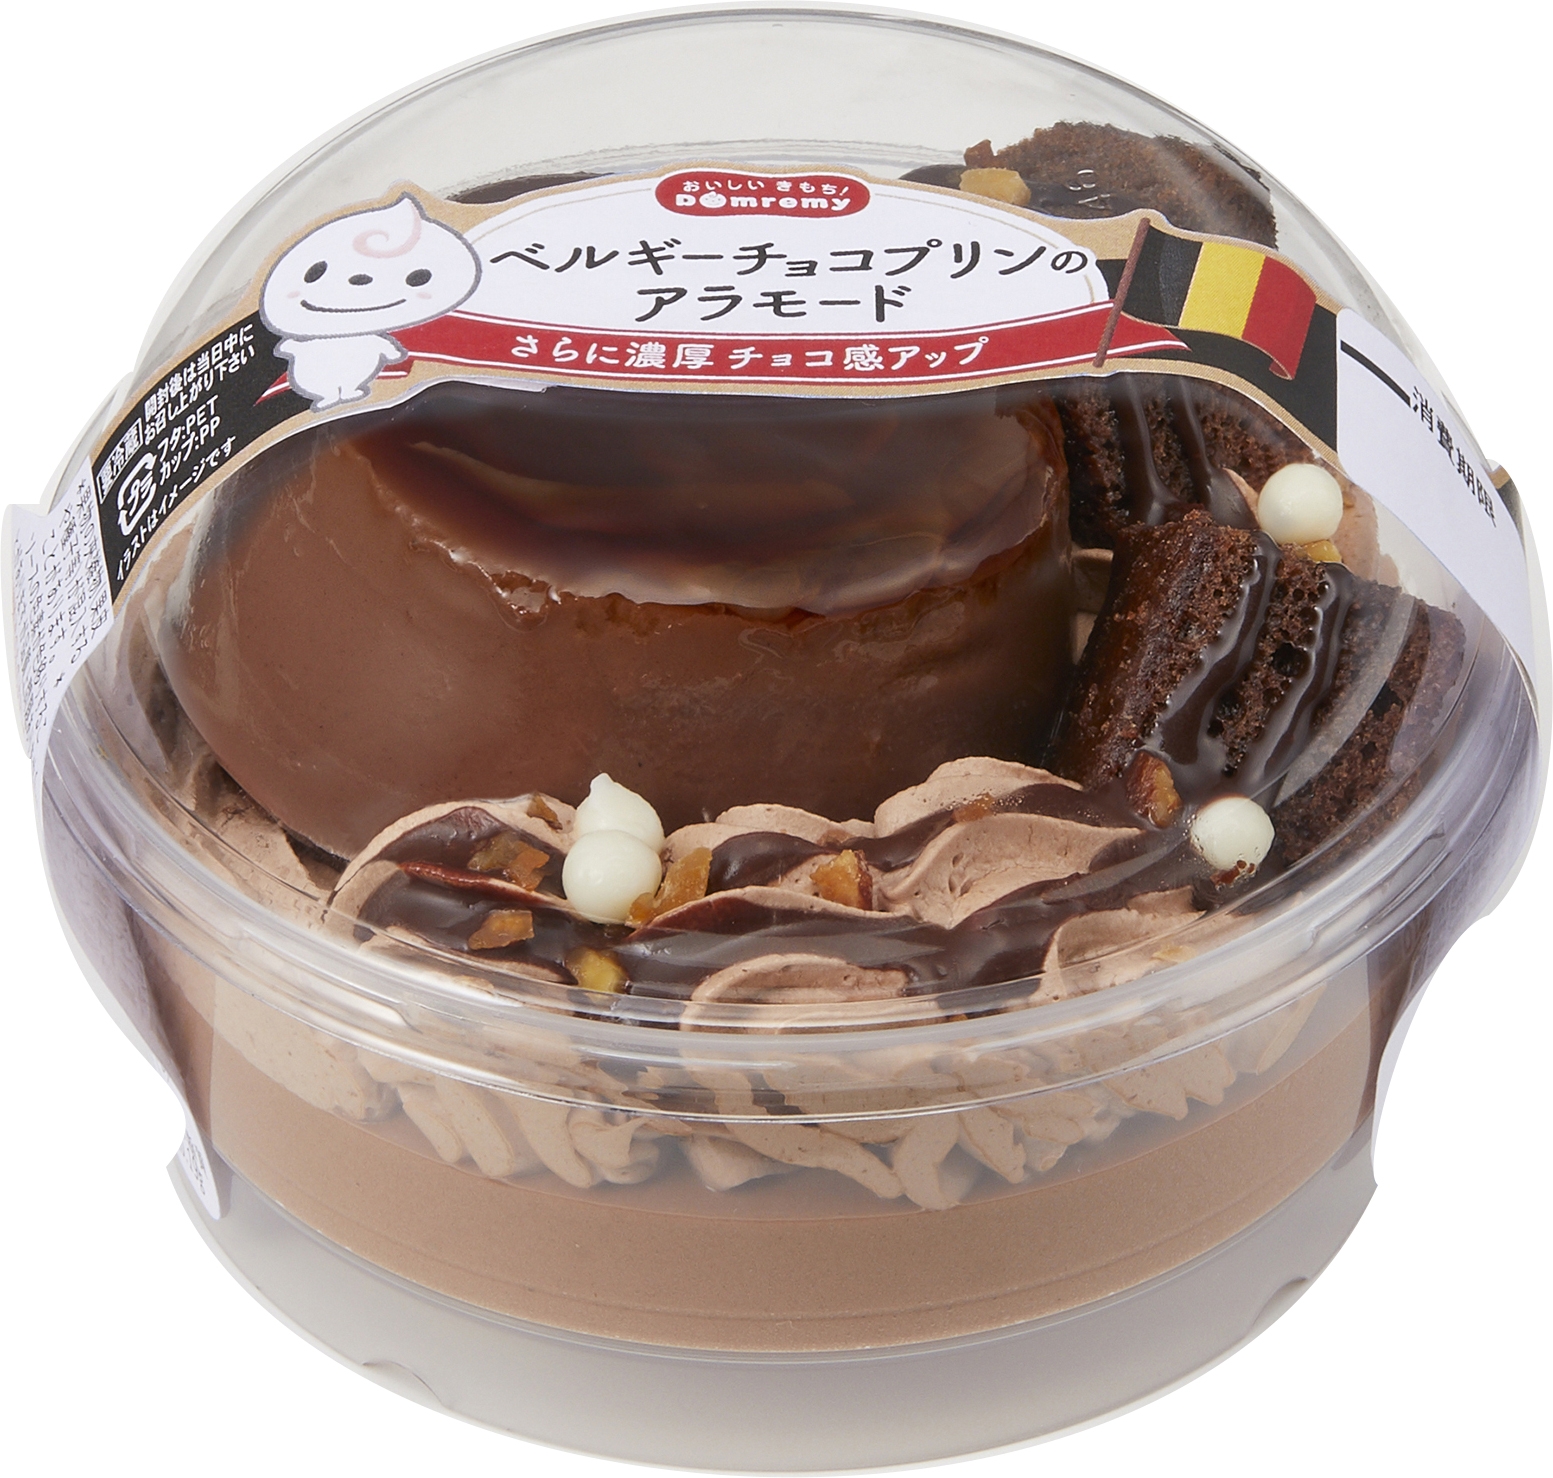 コンビニエンスストア等で売られている、チョコレートプリン菓子の画像